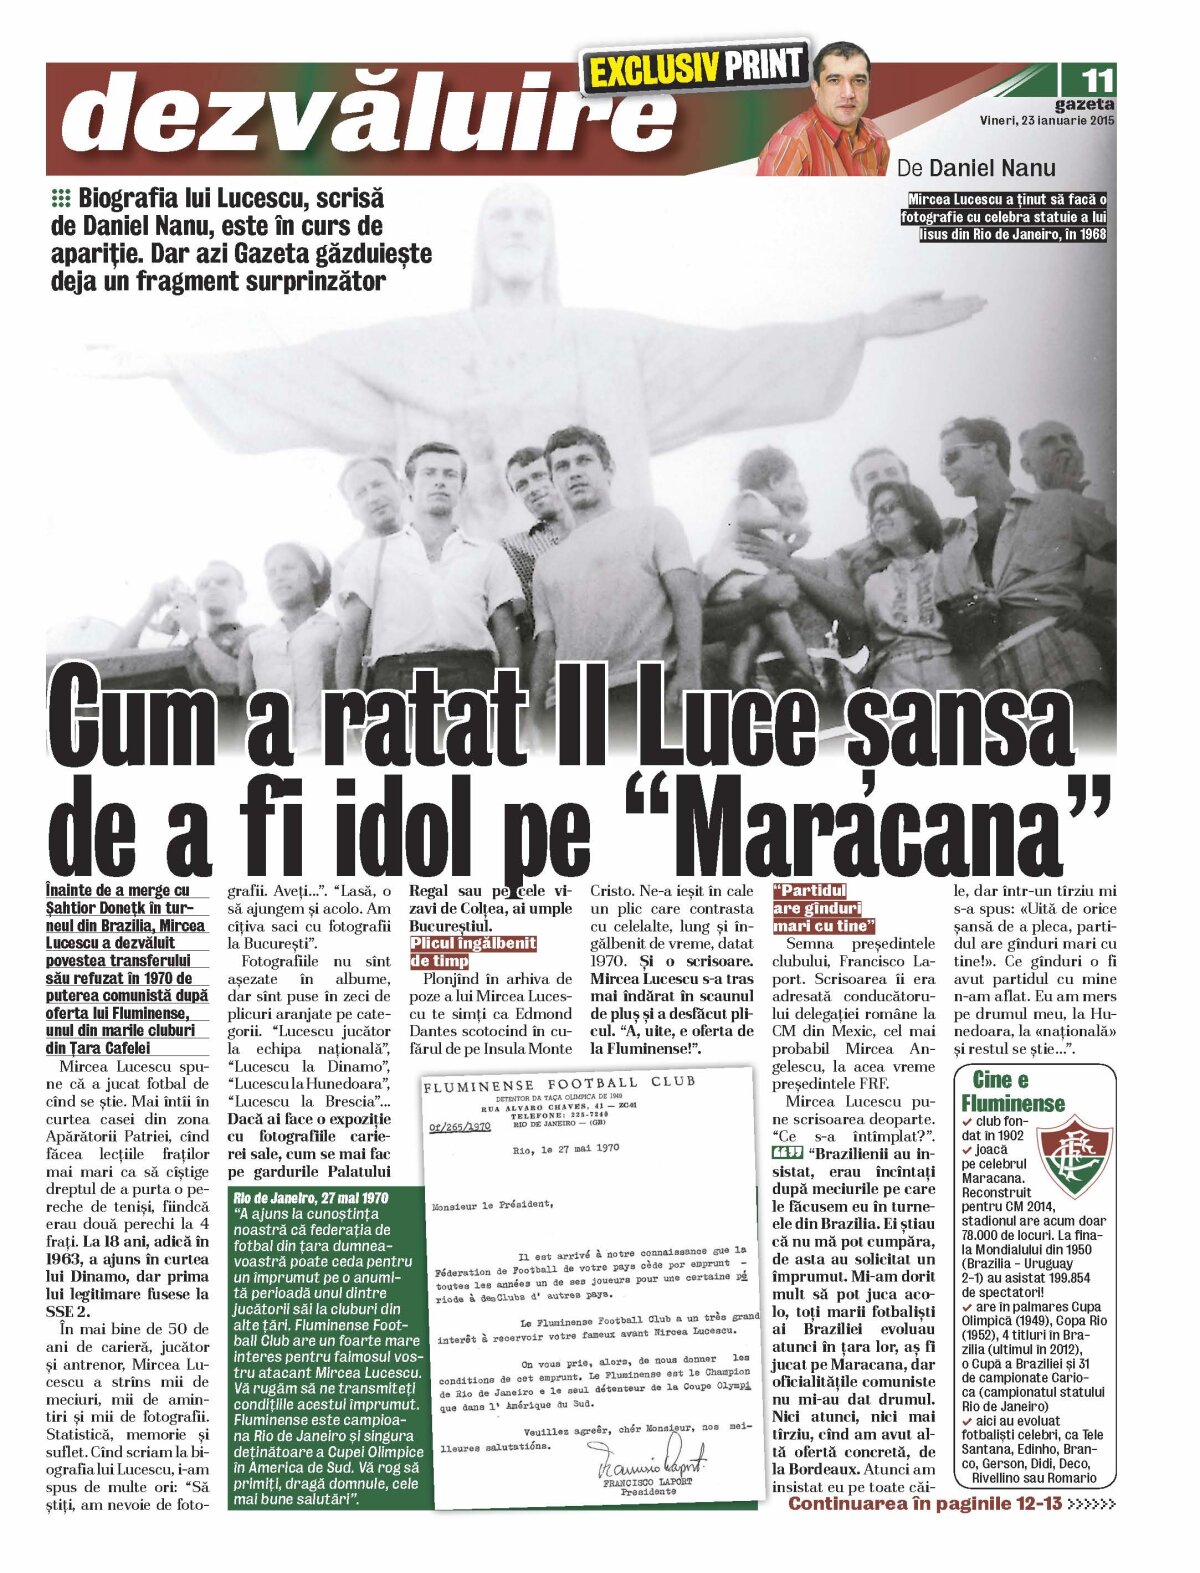 Amical cu brazilienii care au vrut să-l transfere! Il Luce faţă în faţă cu Fluminense: "Voiam să joc pentru ei, dar oficialitățile comuniste nu m-au lăsat!"